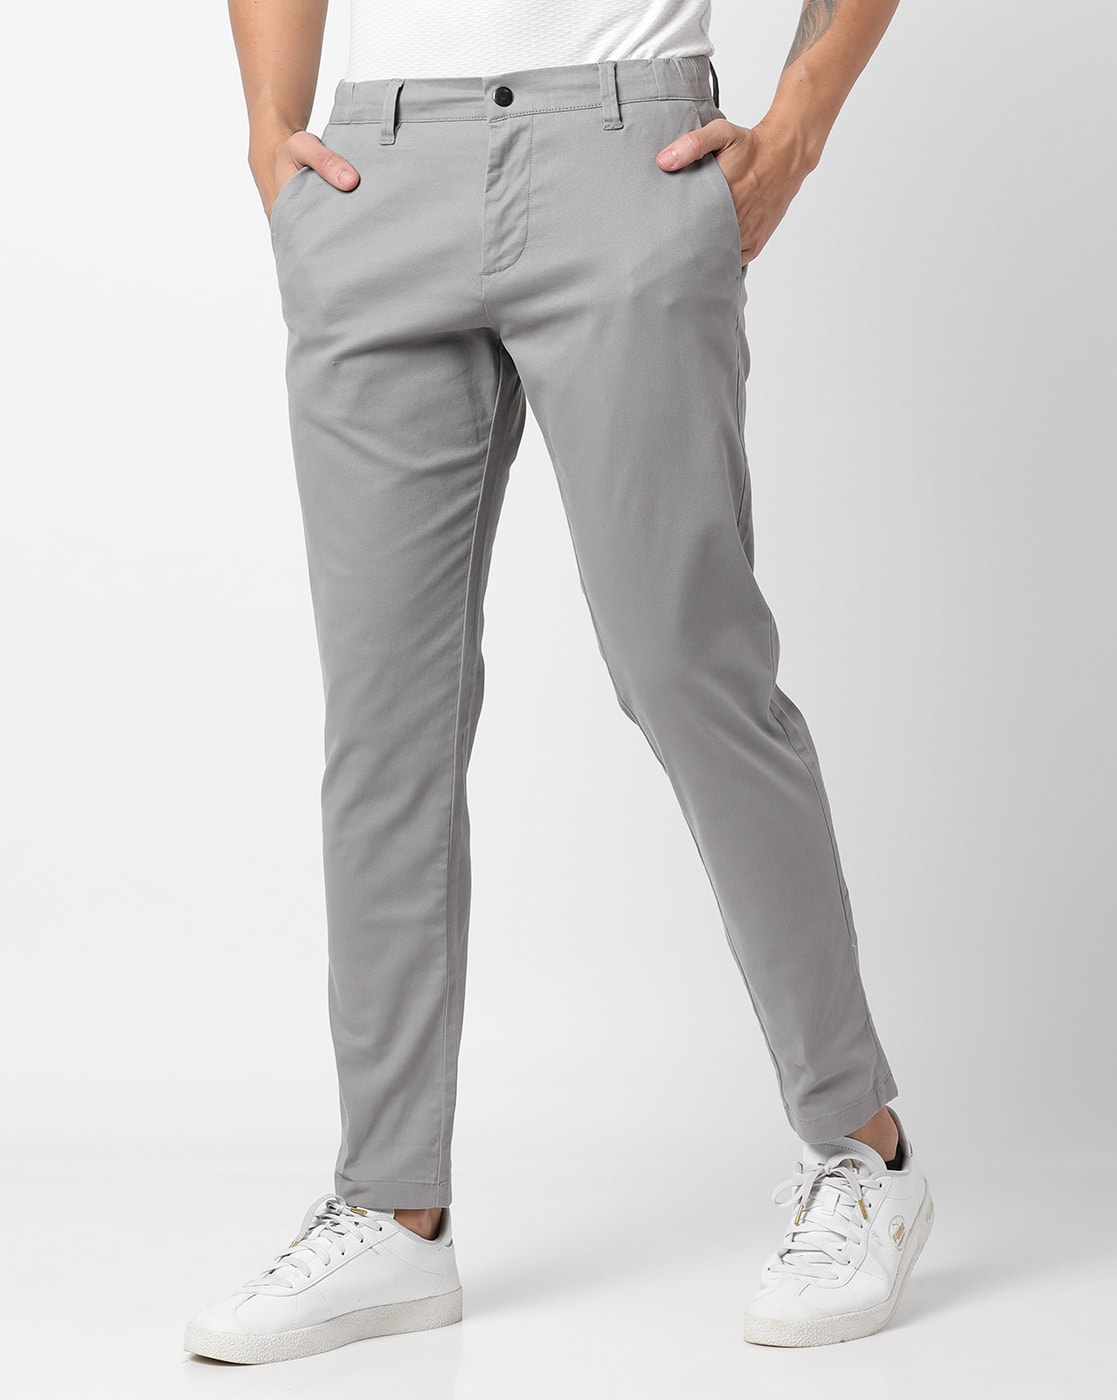 5 Colors Size 28 to 36 Korean Casual SlacksPants for Men Cotton Ankle Cut  Korean Fashion Pants Trouser  Lazada PH